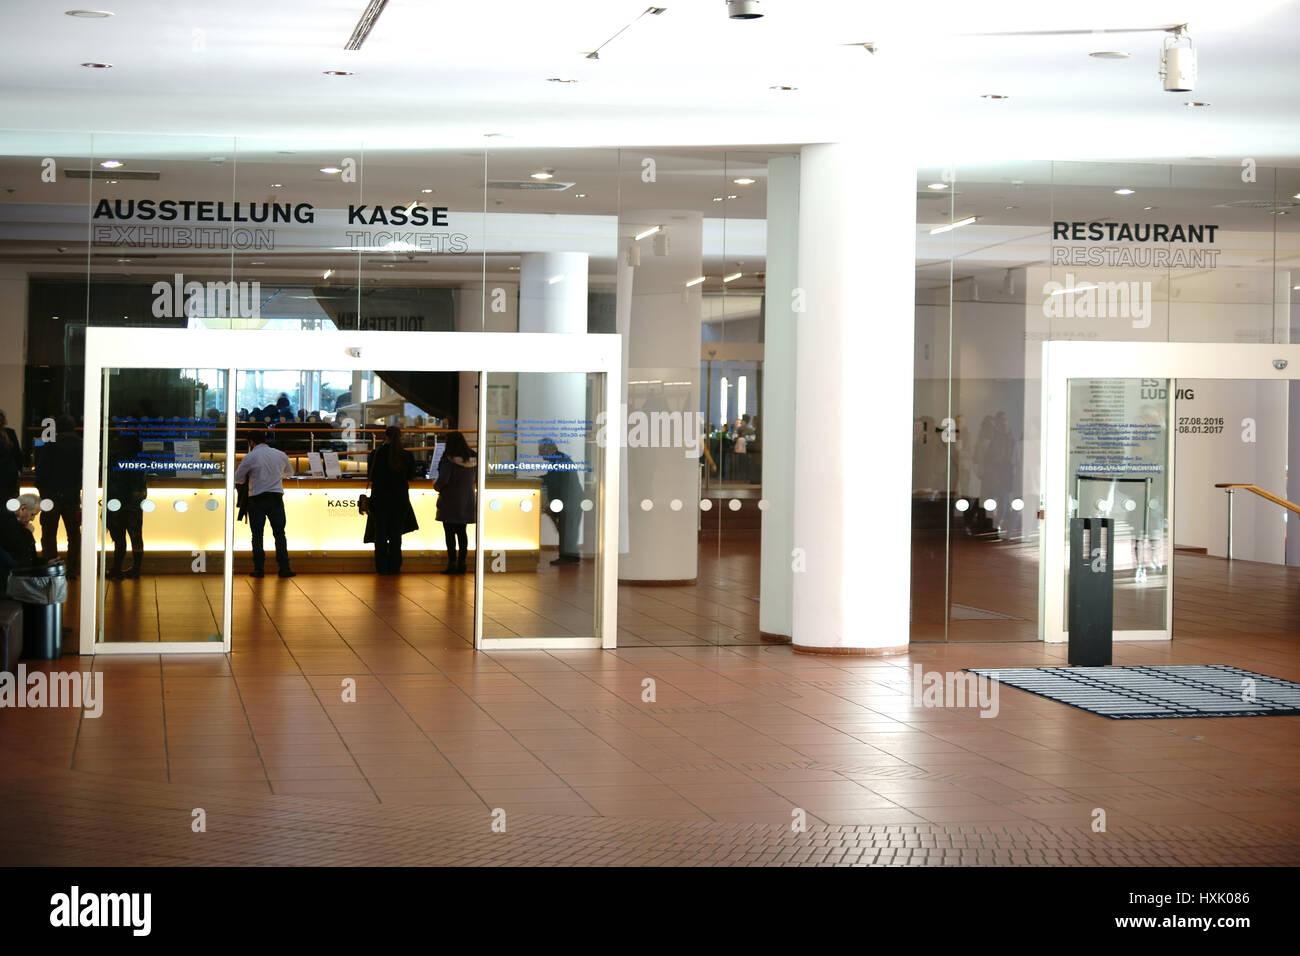 Cologne, Allemagne - 24 novembre 2016 : l'entrée et le bureau de paye du Musée Ludwig, une exposition d'art d'art moderne du 20ème et 21ème siècle Banque D'Images